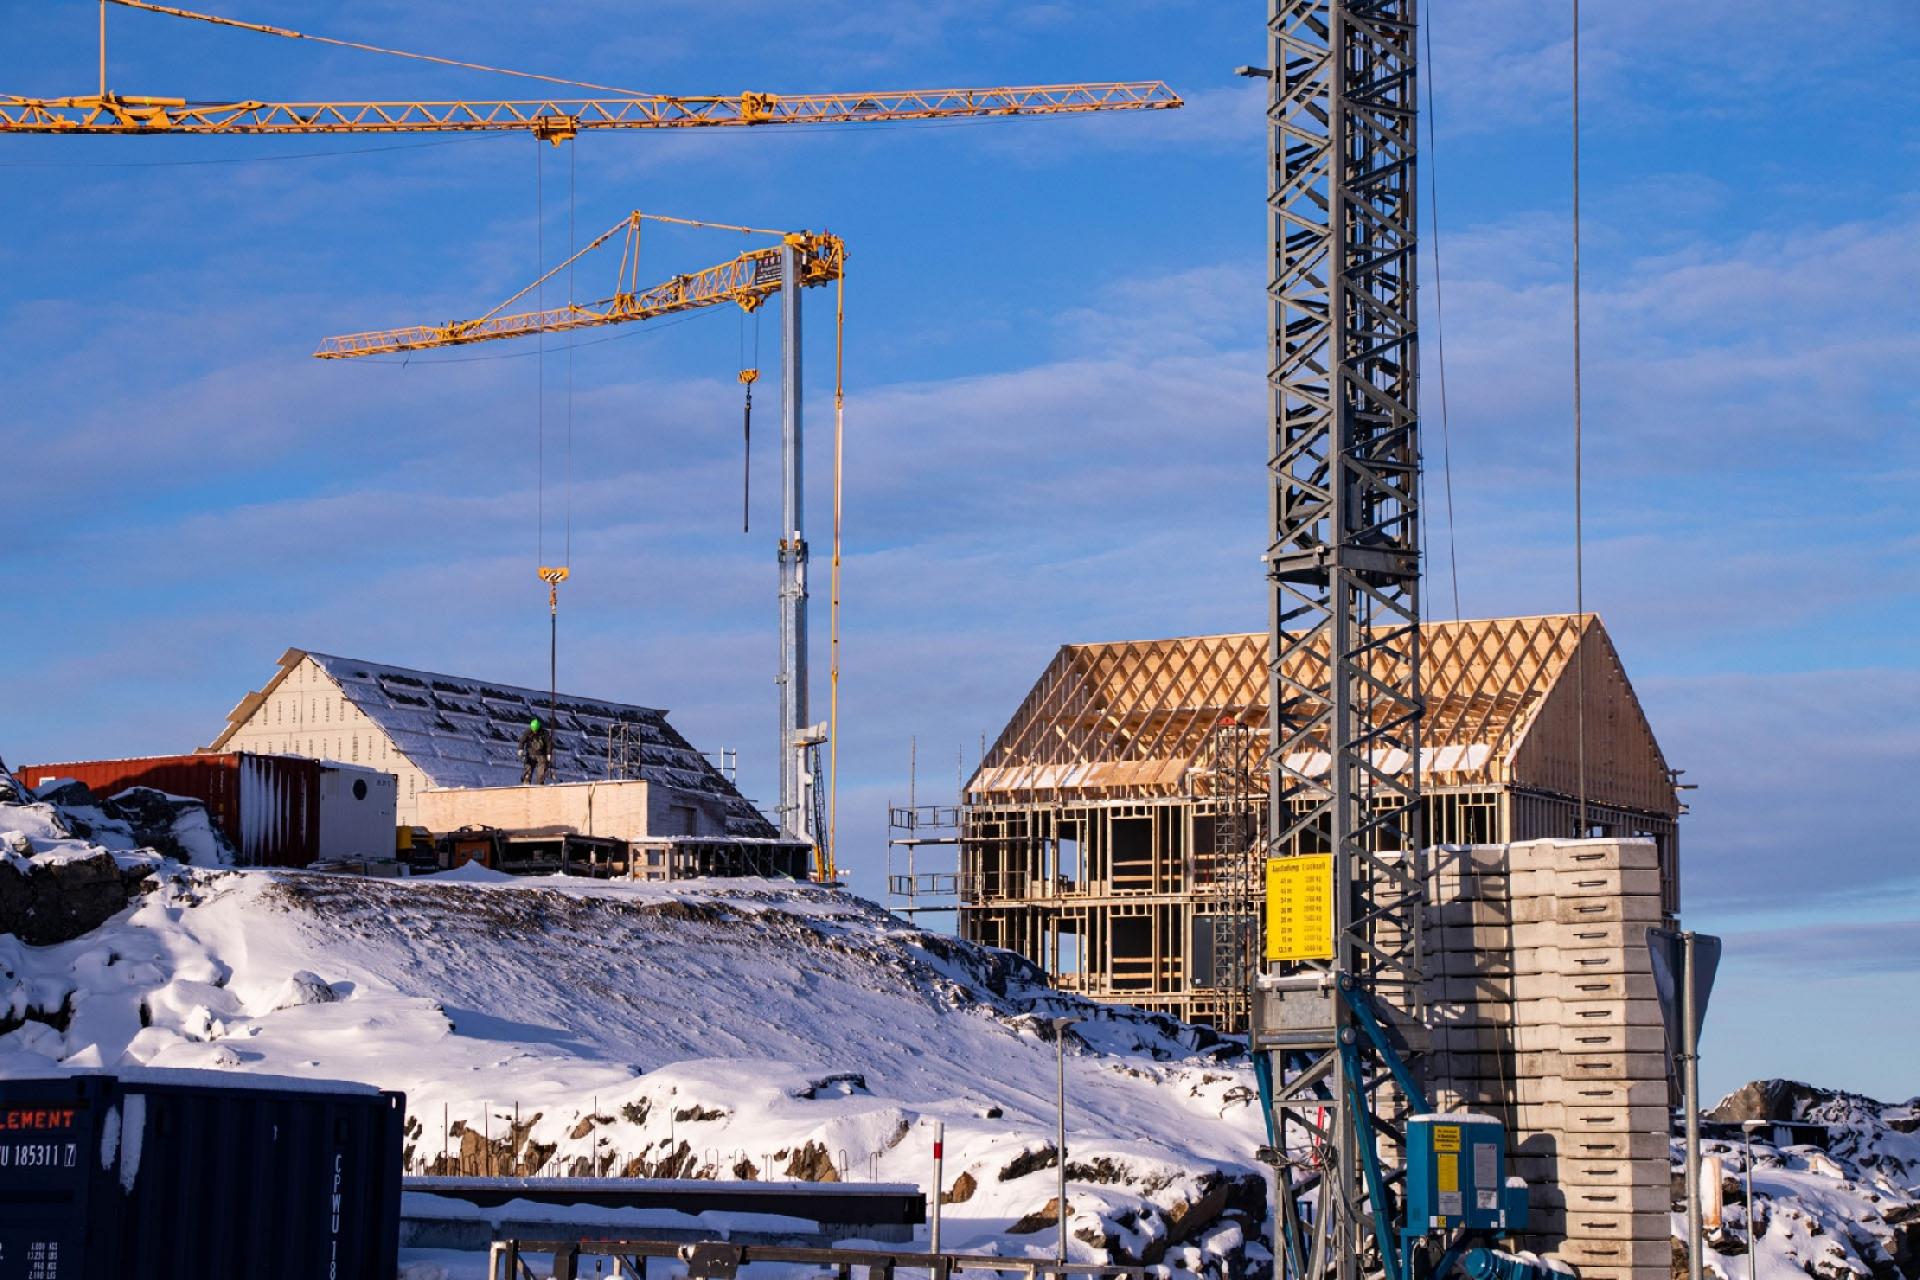 Ifølge Christian Keldsen, der er direktør for Grønlands Erhverv, er der gode muligheder for, at den lokale kompetence ud i det at opføre byggeprojekter kan blive en attraktiv eksportvare for lokale håndværkere og virksomheder.